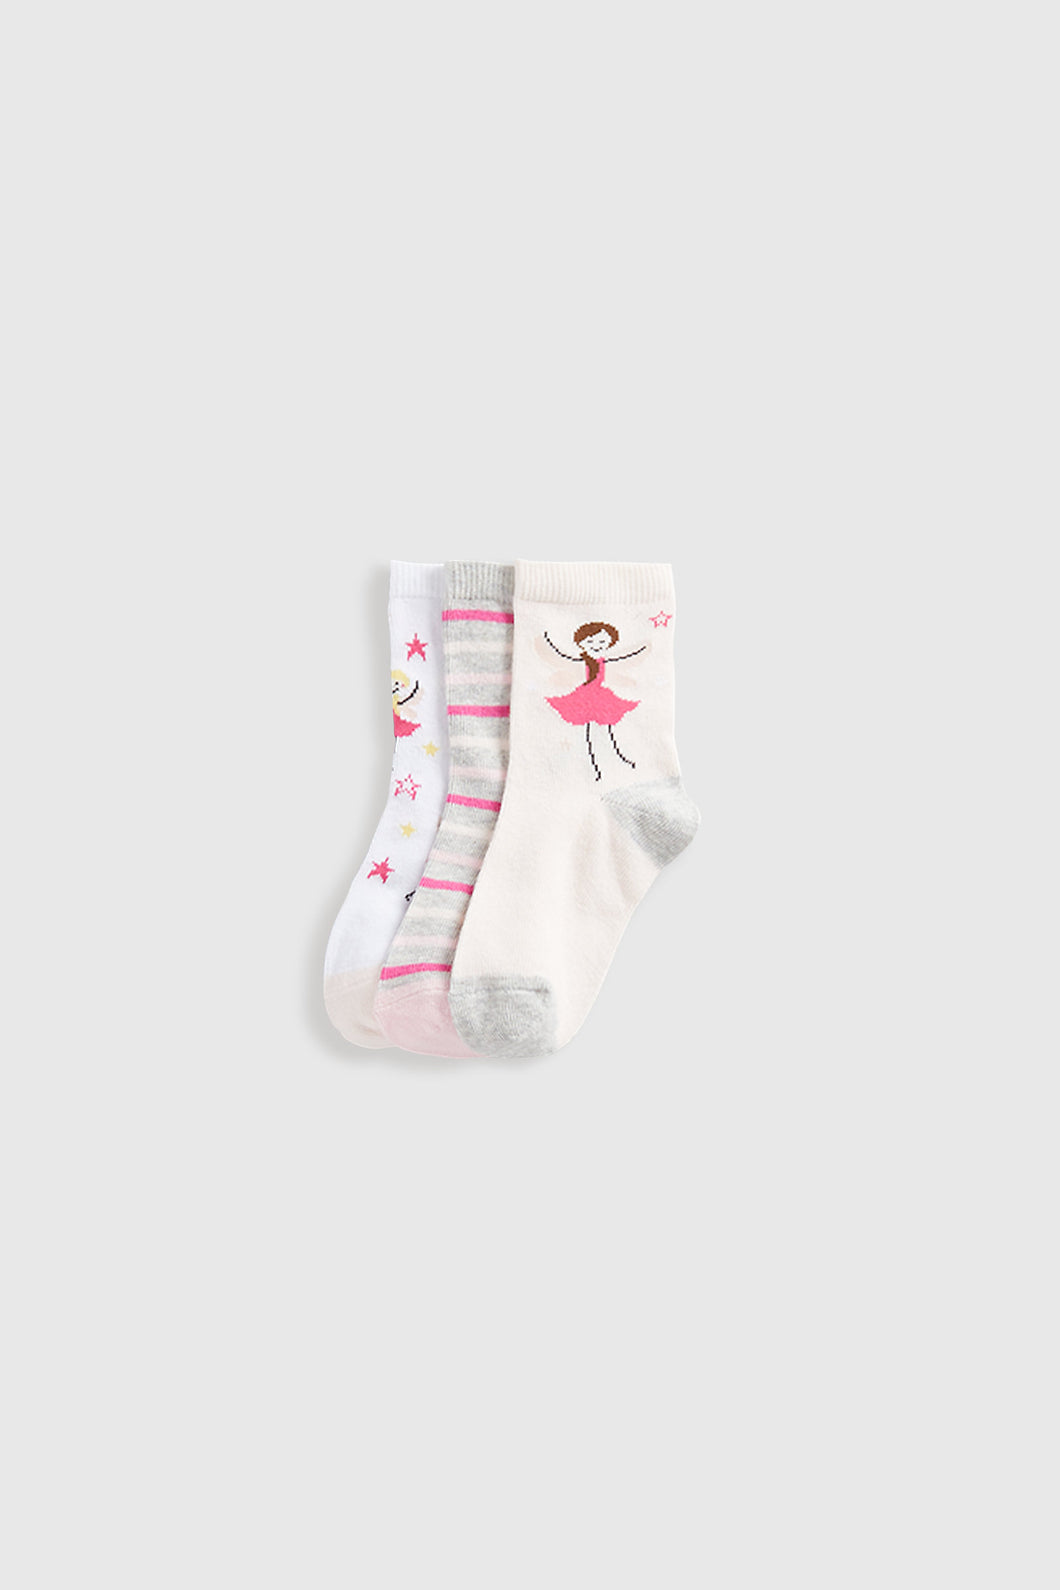 Mothercare Fairy Socks - 3 Pack